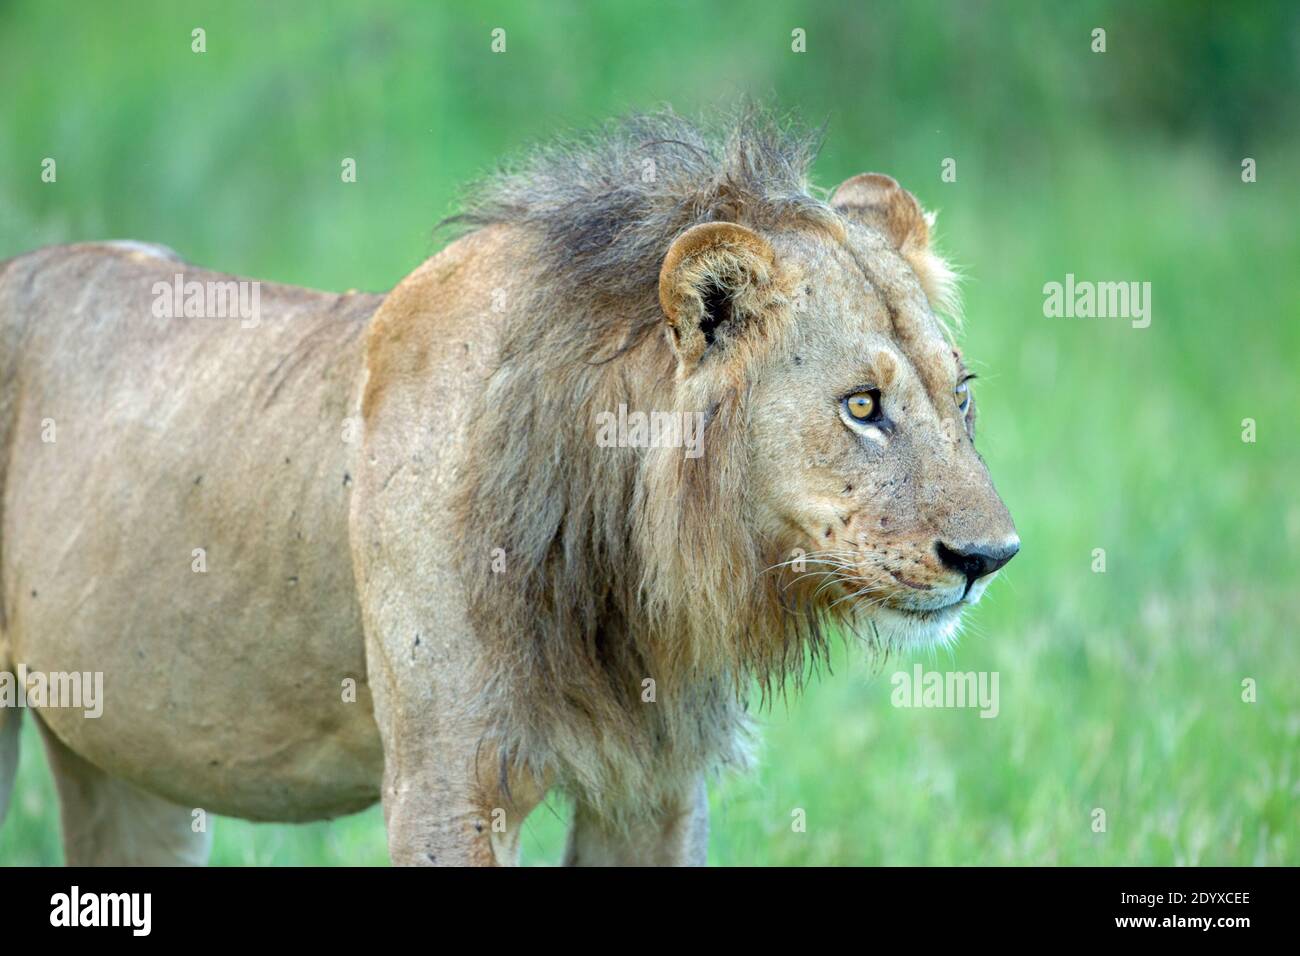 Afrikanischer Löwe (Panthera leo). Aussehen eines abgenutzten, vernarbten, aber immer noch helläugigen Tieres. Erschlaffung, Haltung, Haltung, traurig, vage, suchen, weite Augen, b Stockfoto